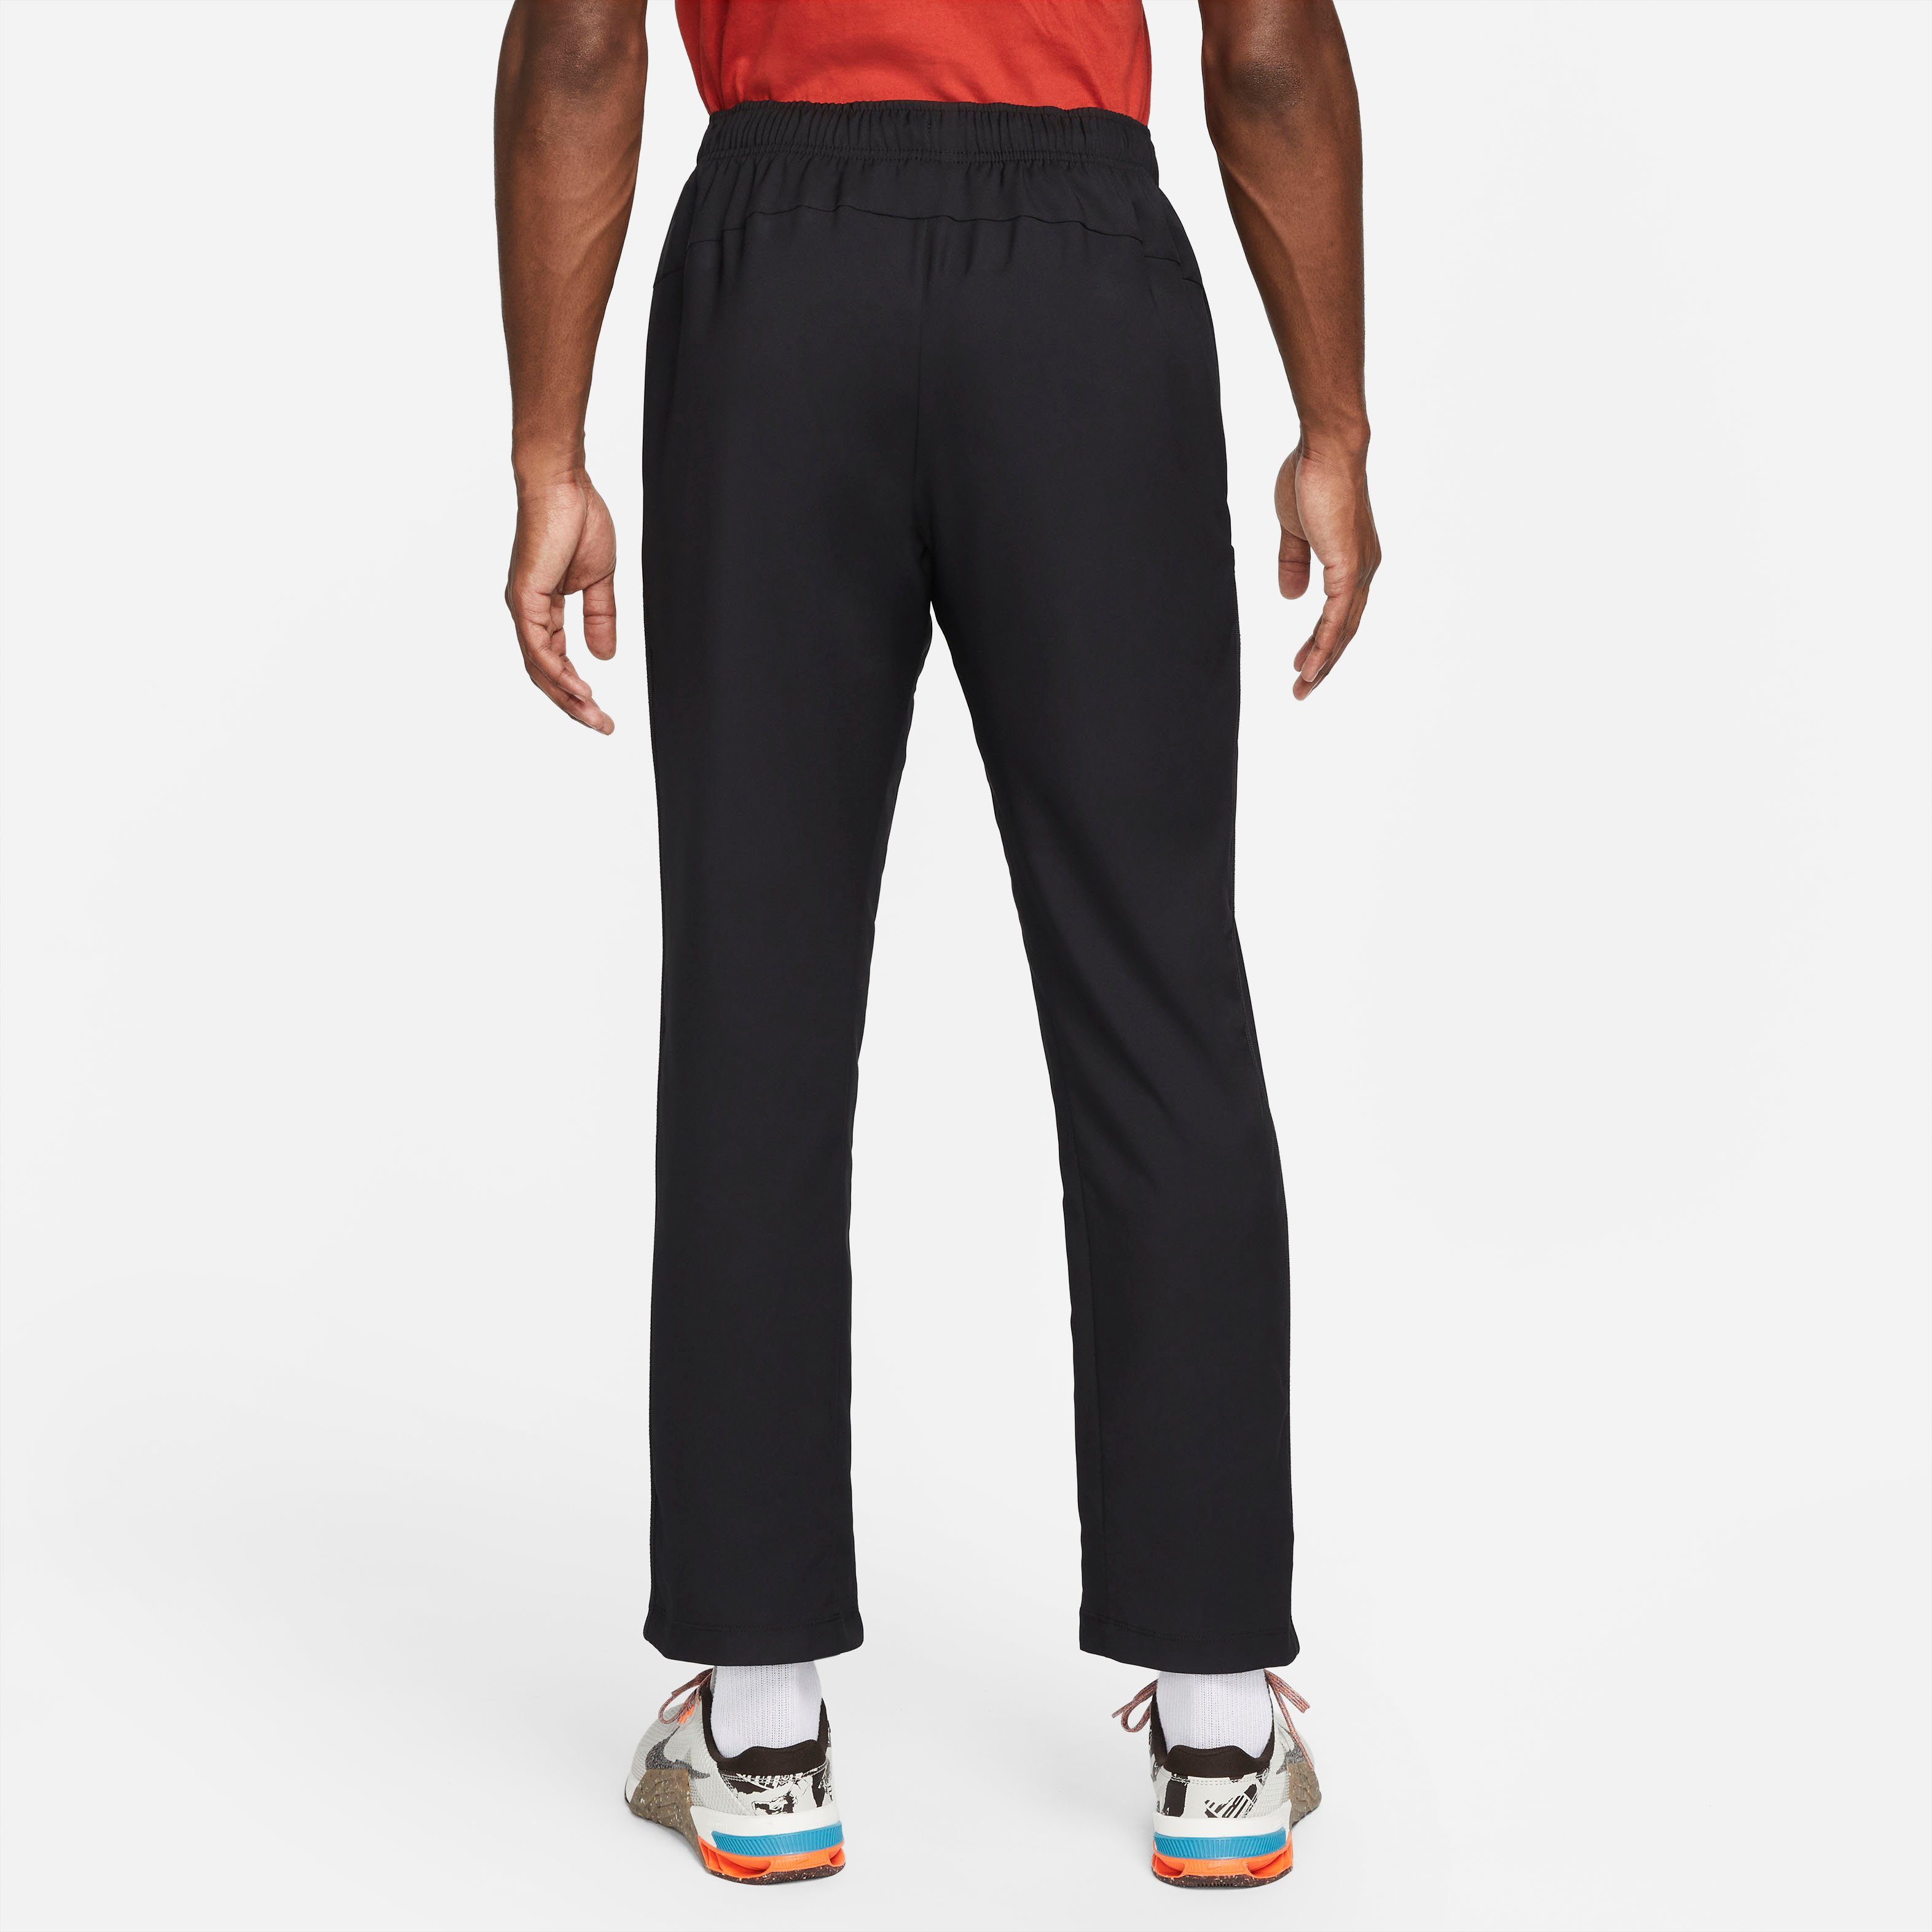 Nike Sporthose Dri-FIT Men's Woven Training Team Pants